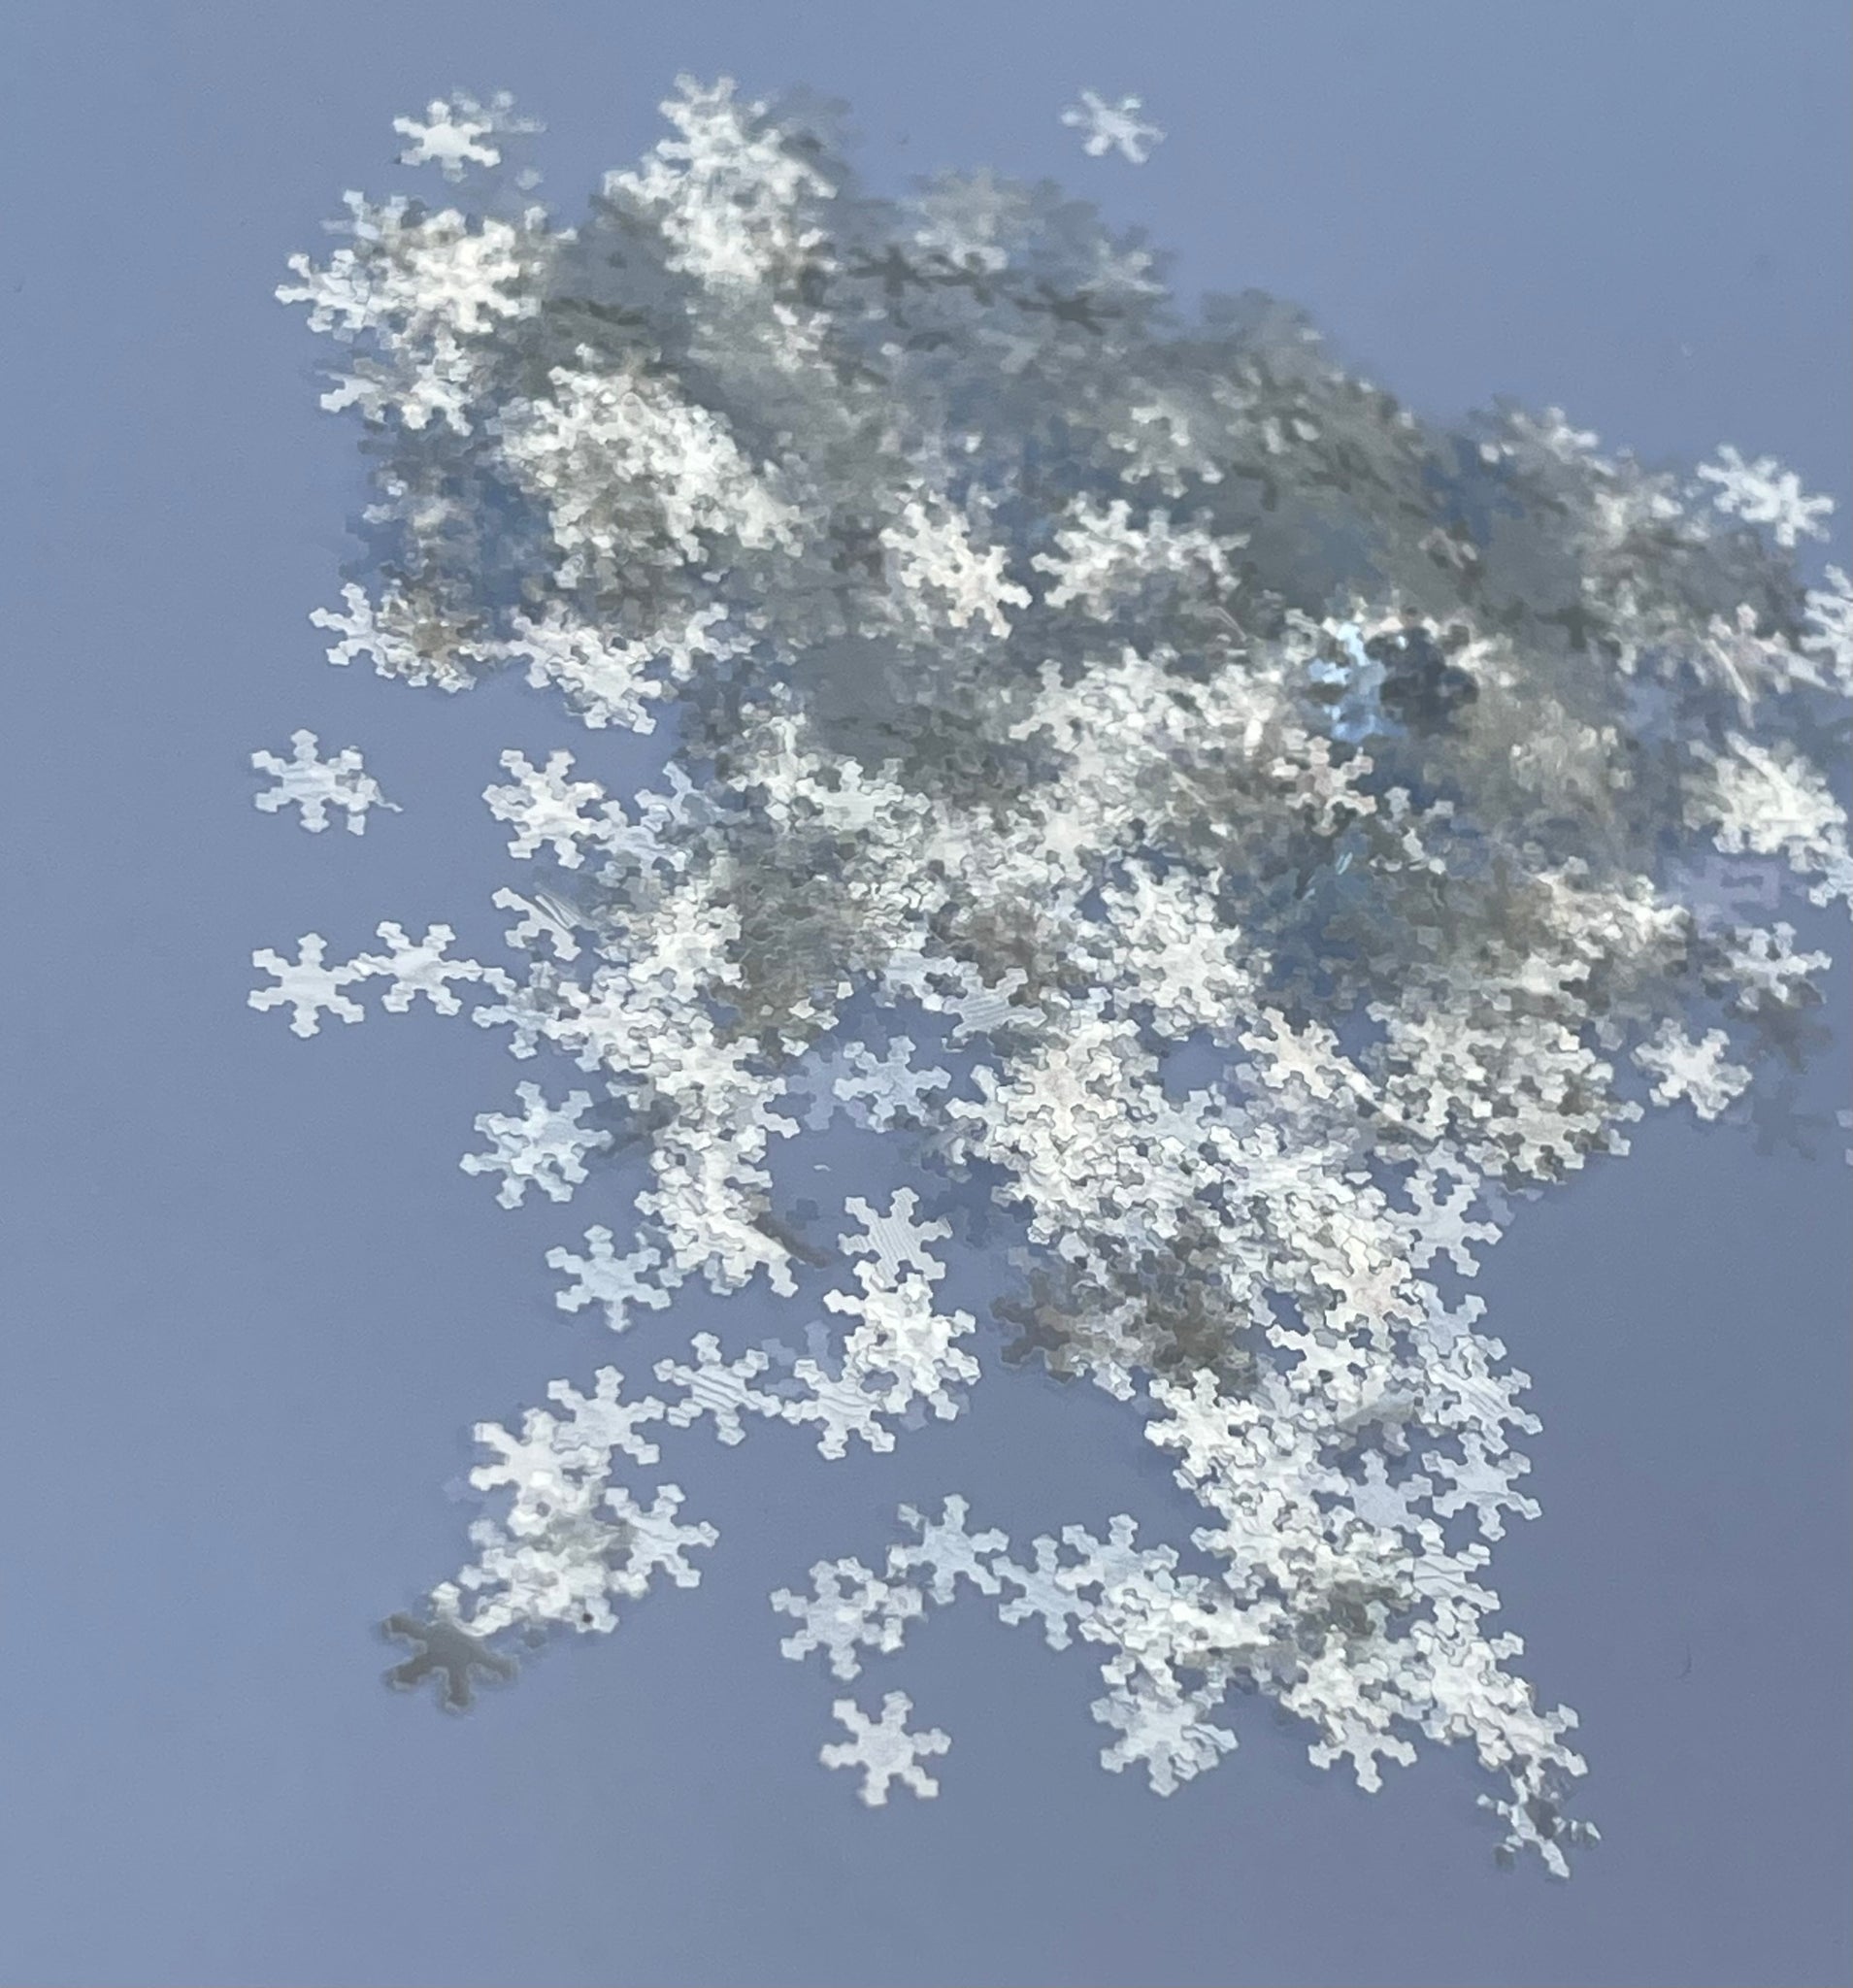 SNOWFLAKES - Silver White Transparent Snowflake Glitter, Snowflake